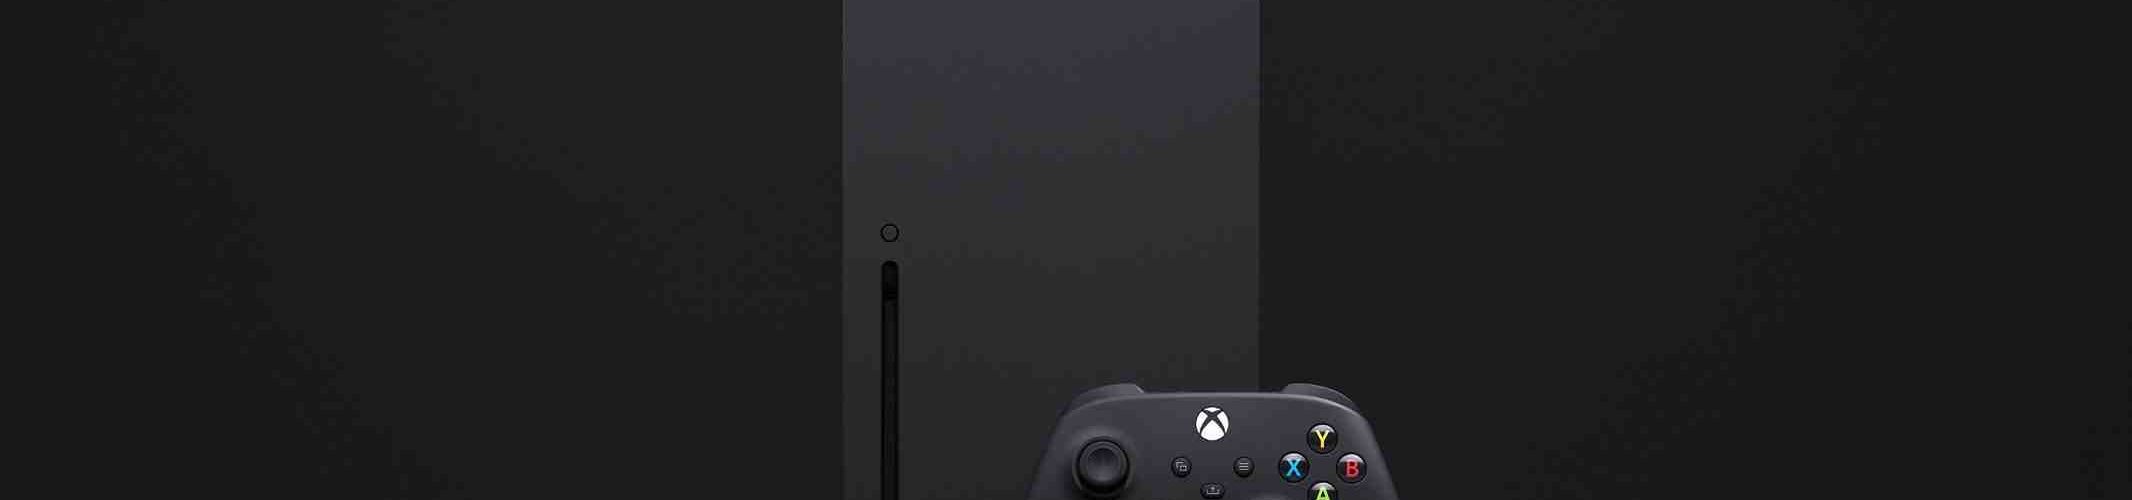 PS5 Vs Xbox Série X Vs Série S : Quelle est la meilleure console ?